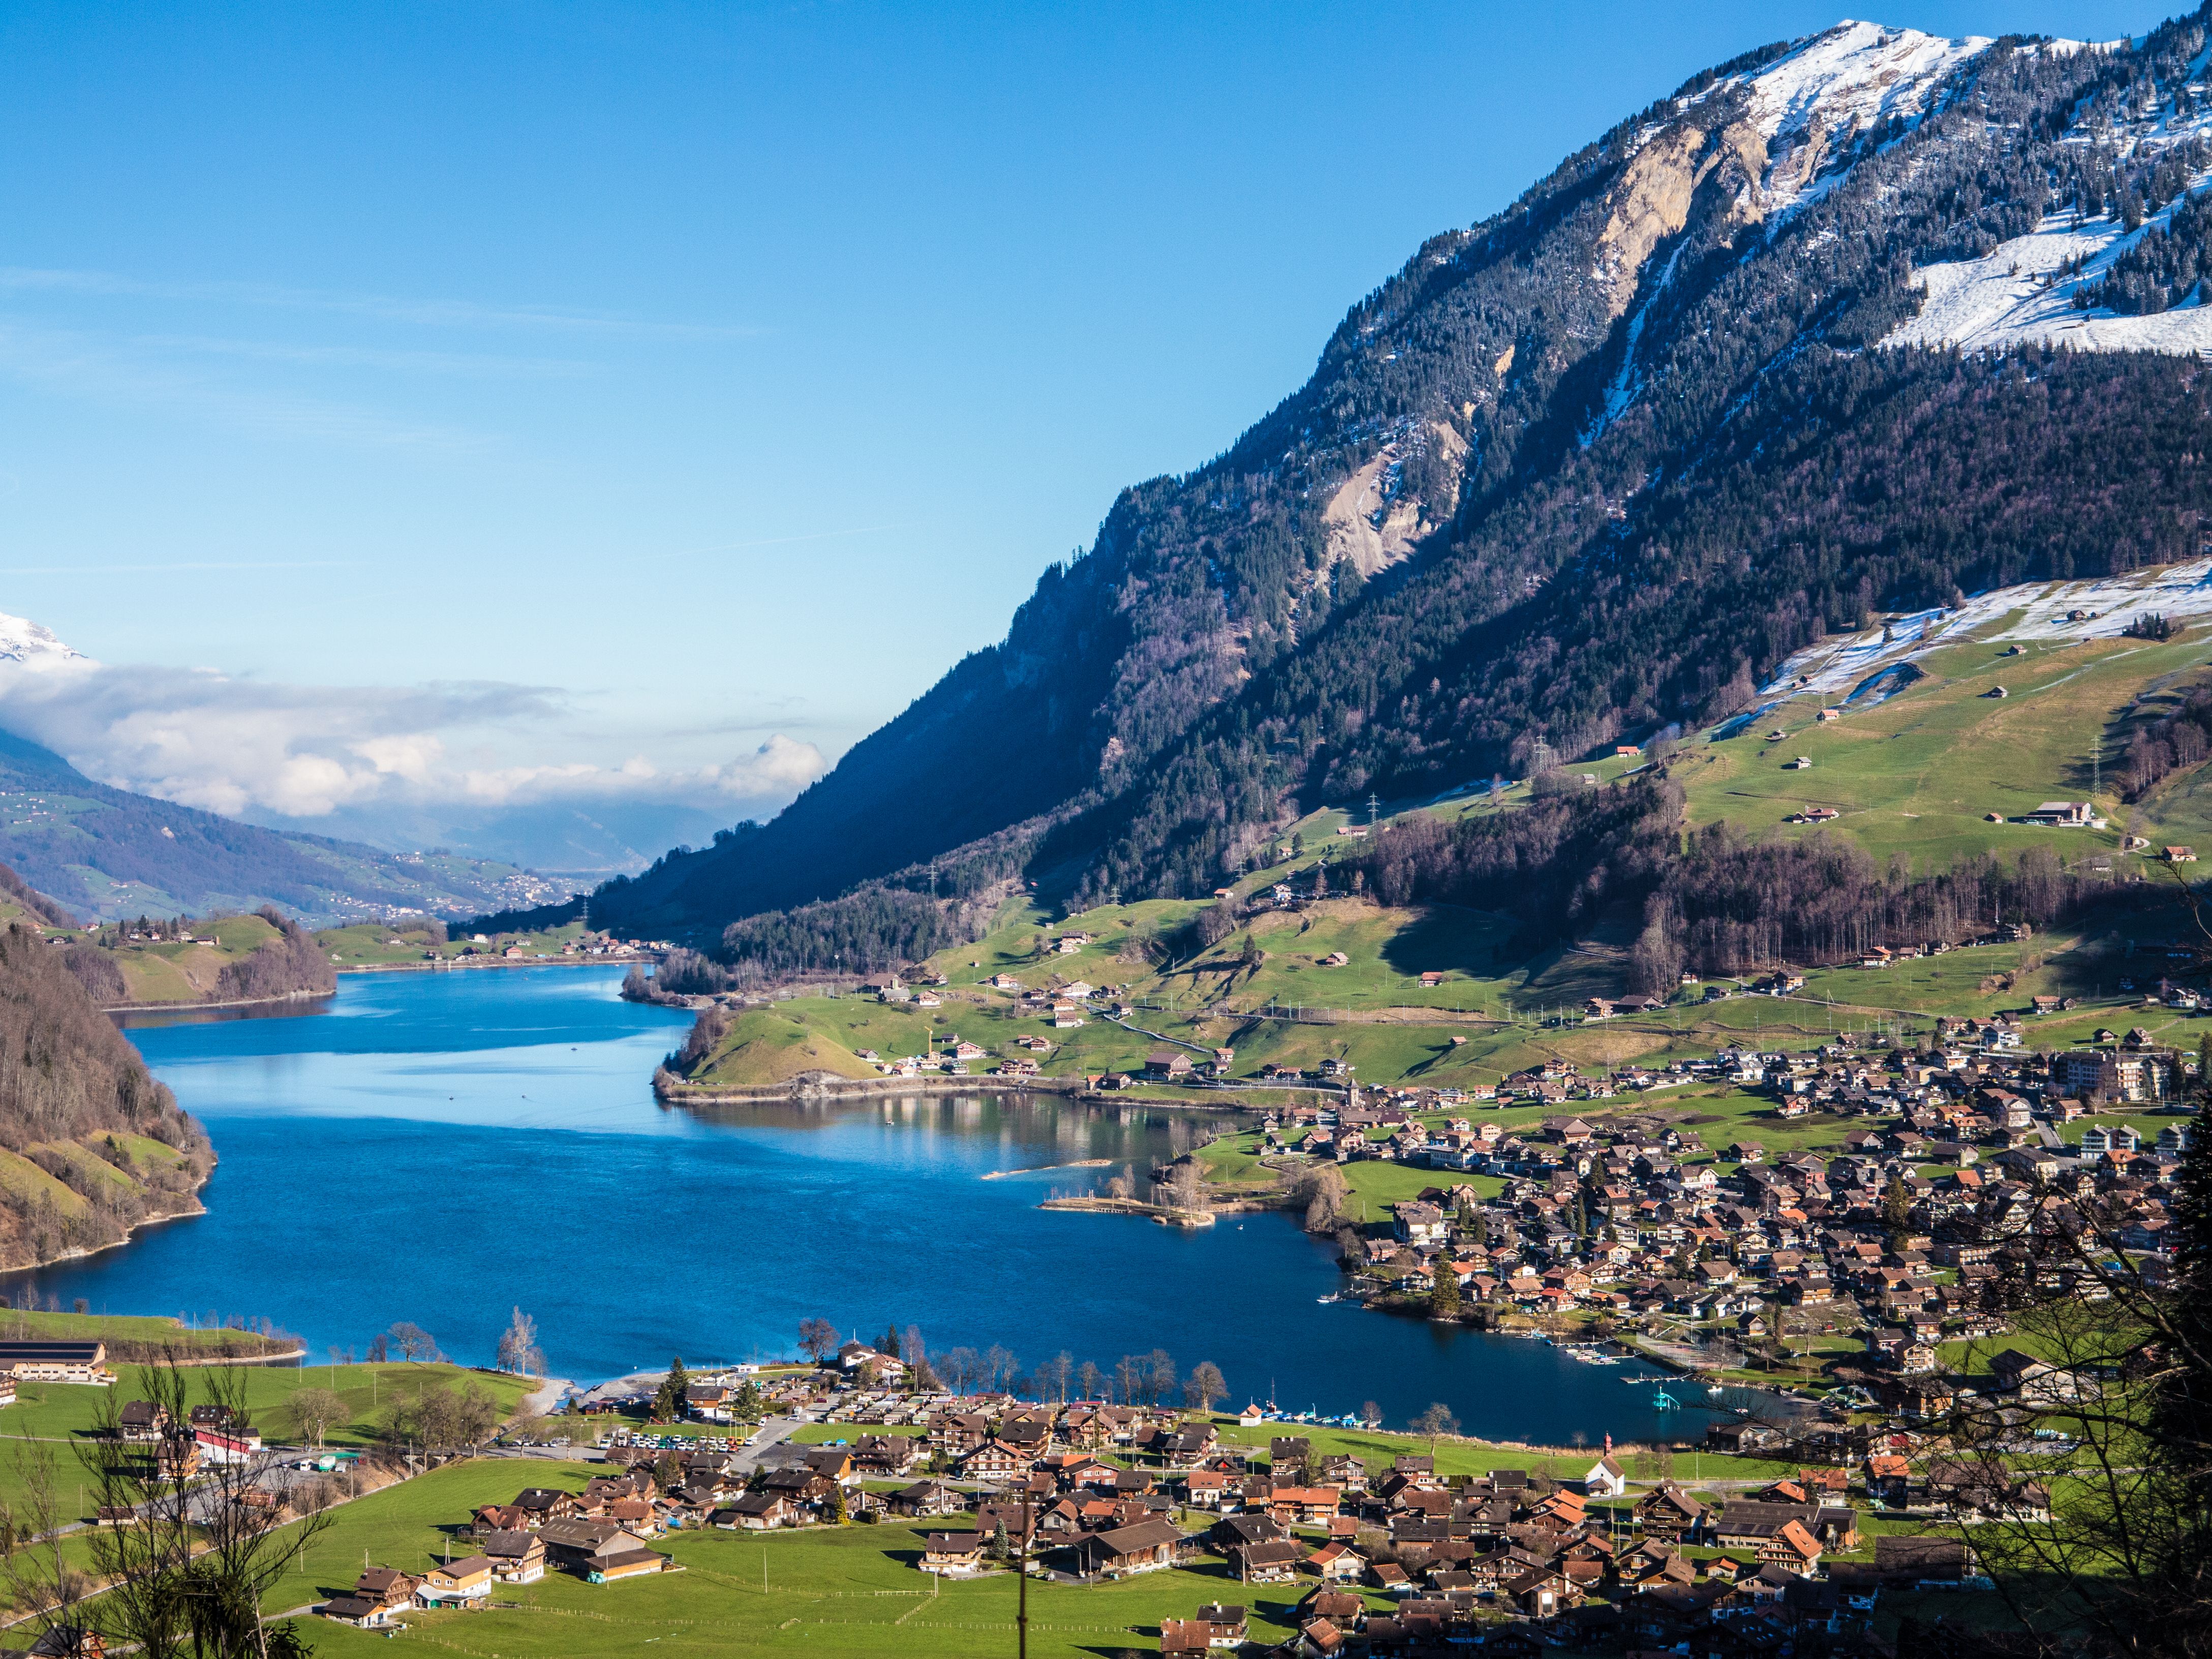 Interlaken panorama between lakes and mountains